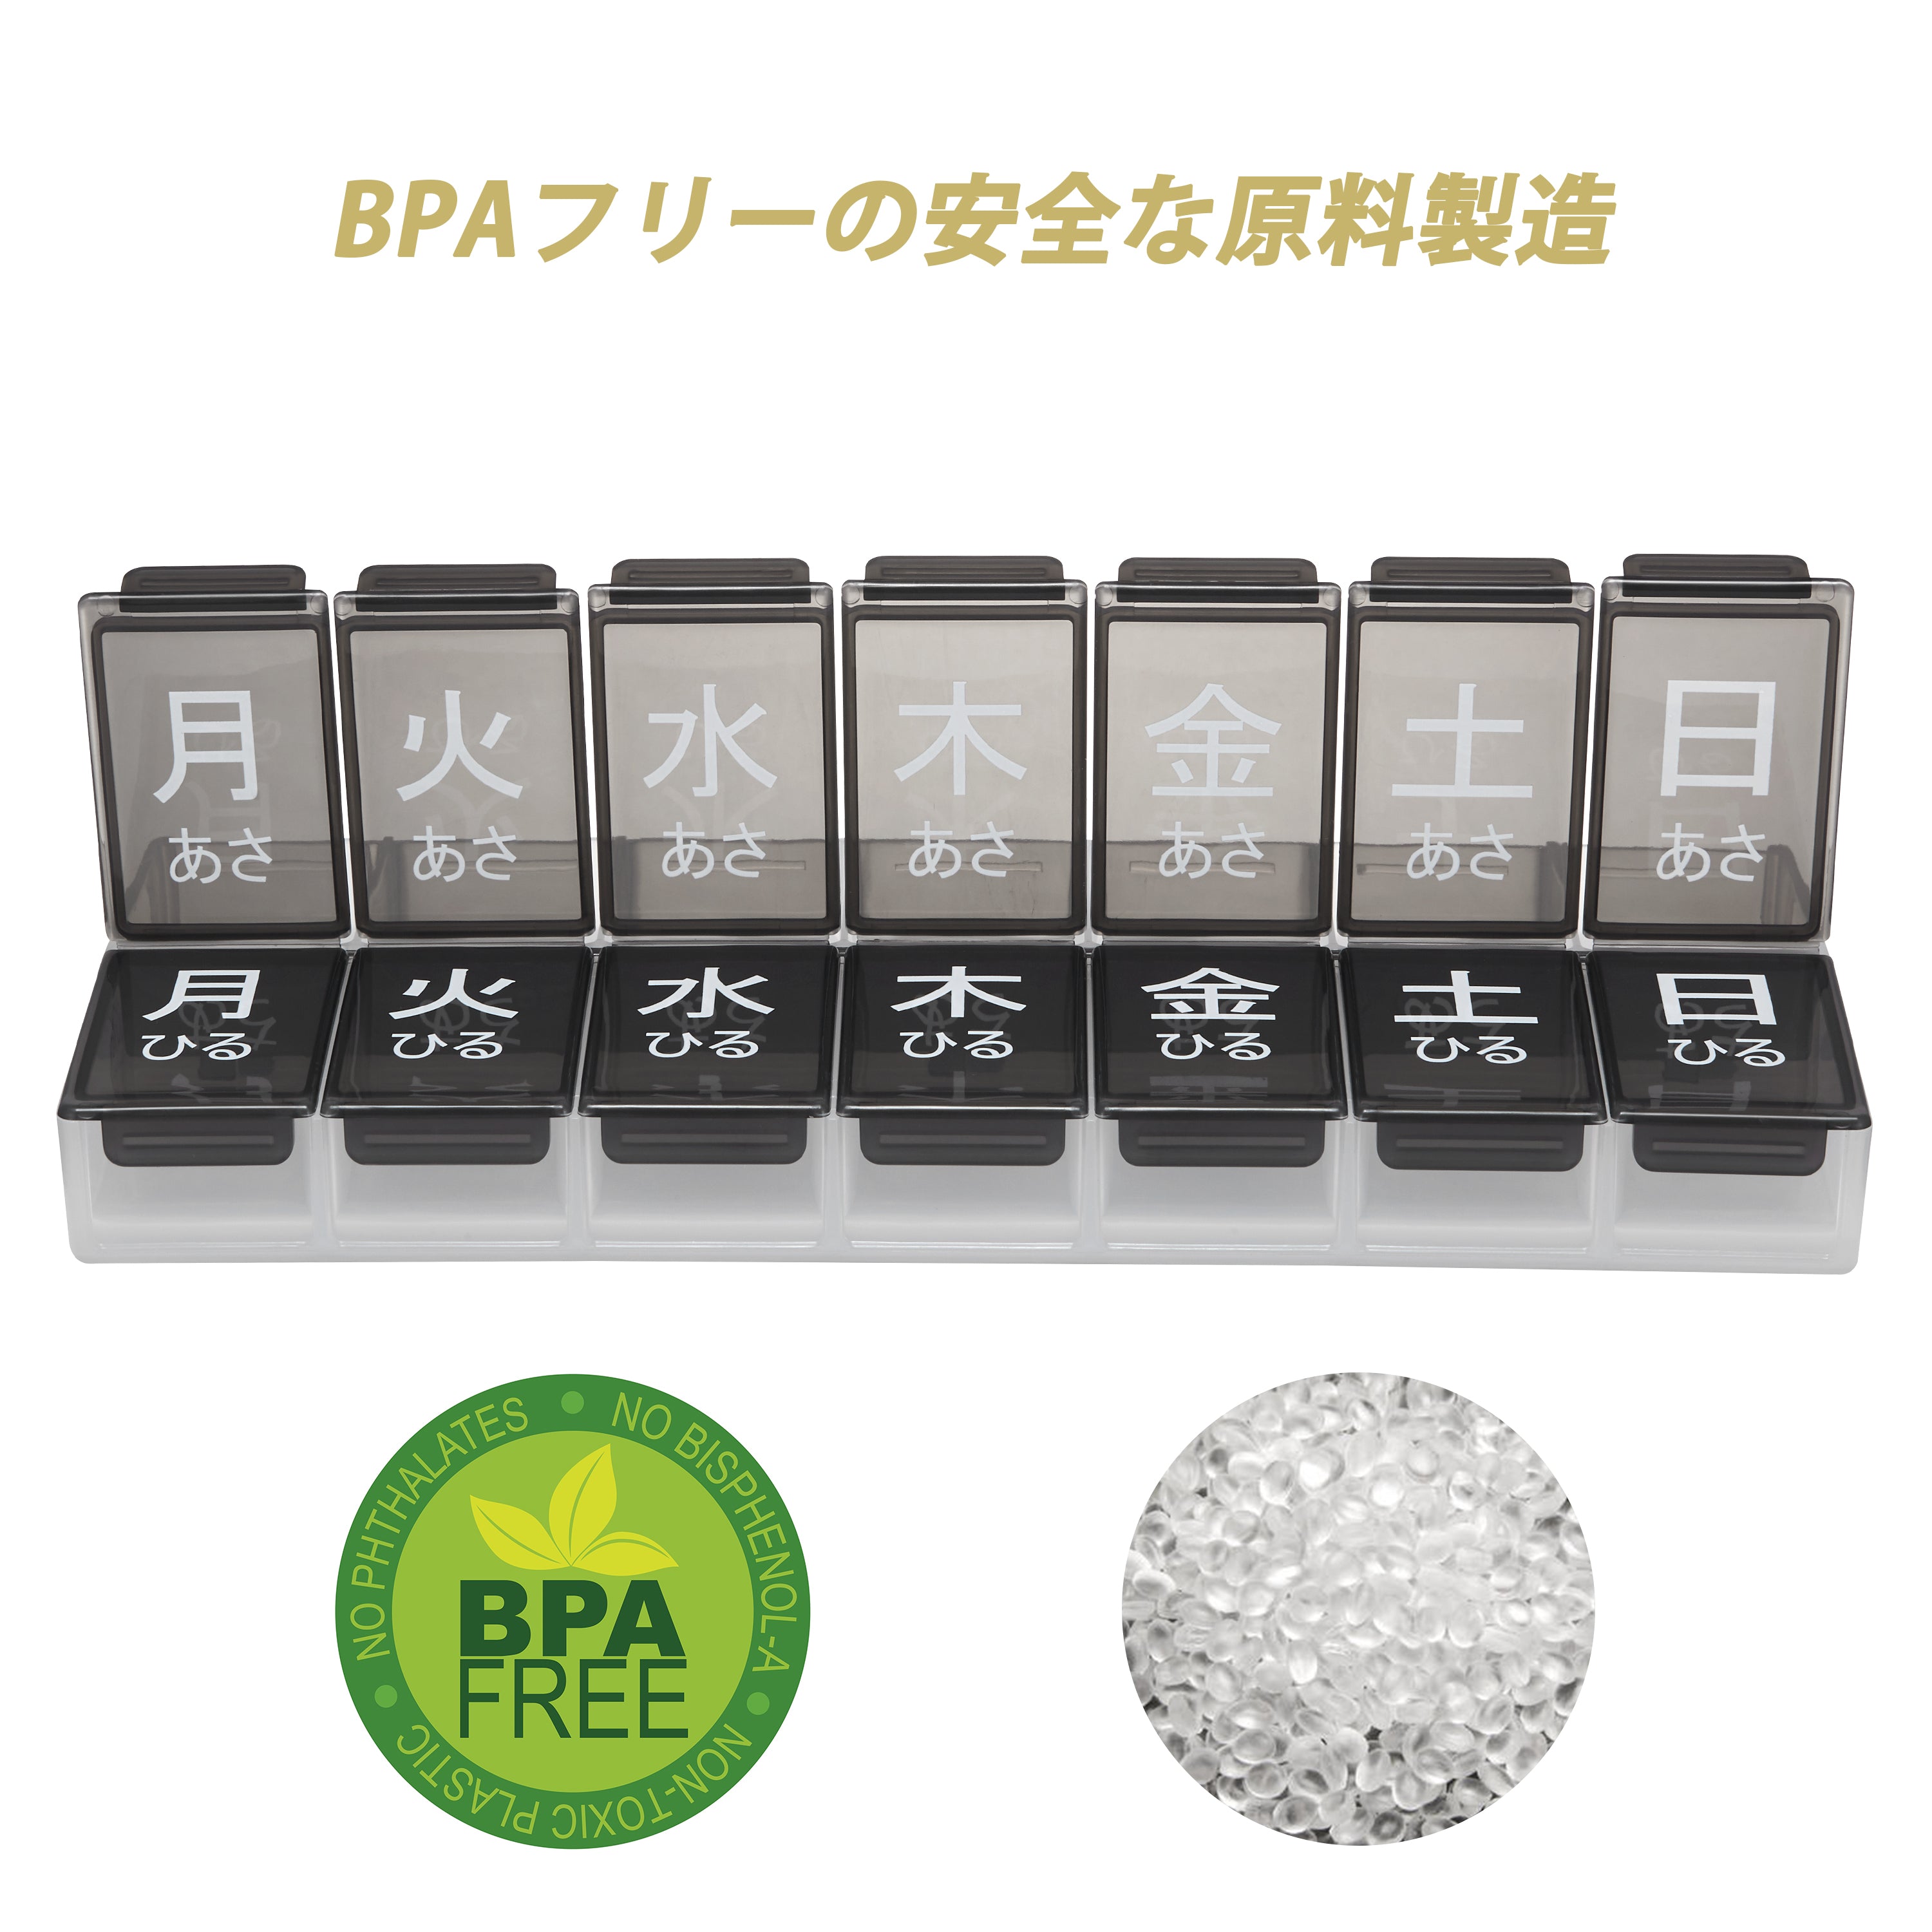 Fullicon ピルケース 1週間 1日2回(朝/昼) 携帯用 大きいサイズ ビタミン、魚油またはサプリメントの特大薬ケース BPA-Free 薬ケース 薬入れ コンパクト くすり整理（黒）